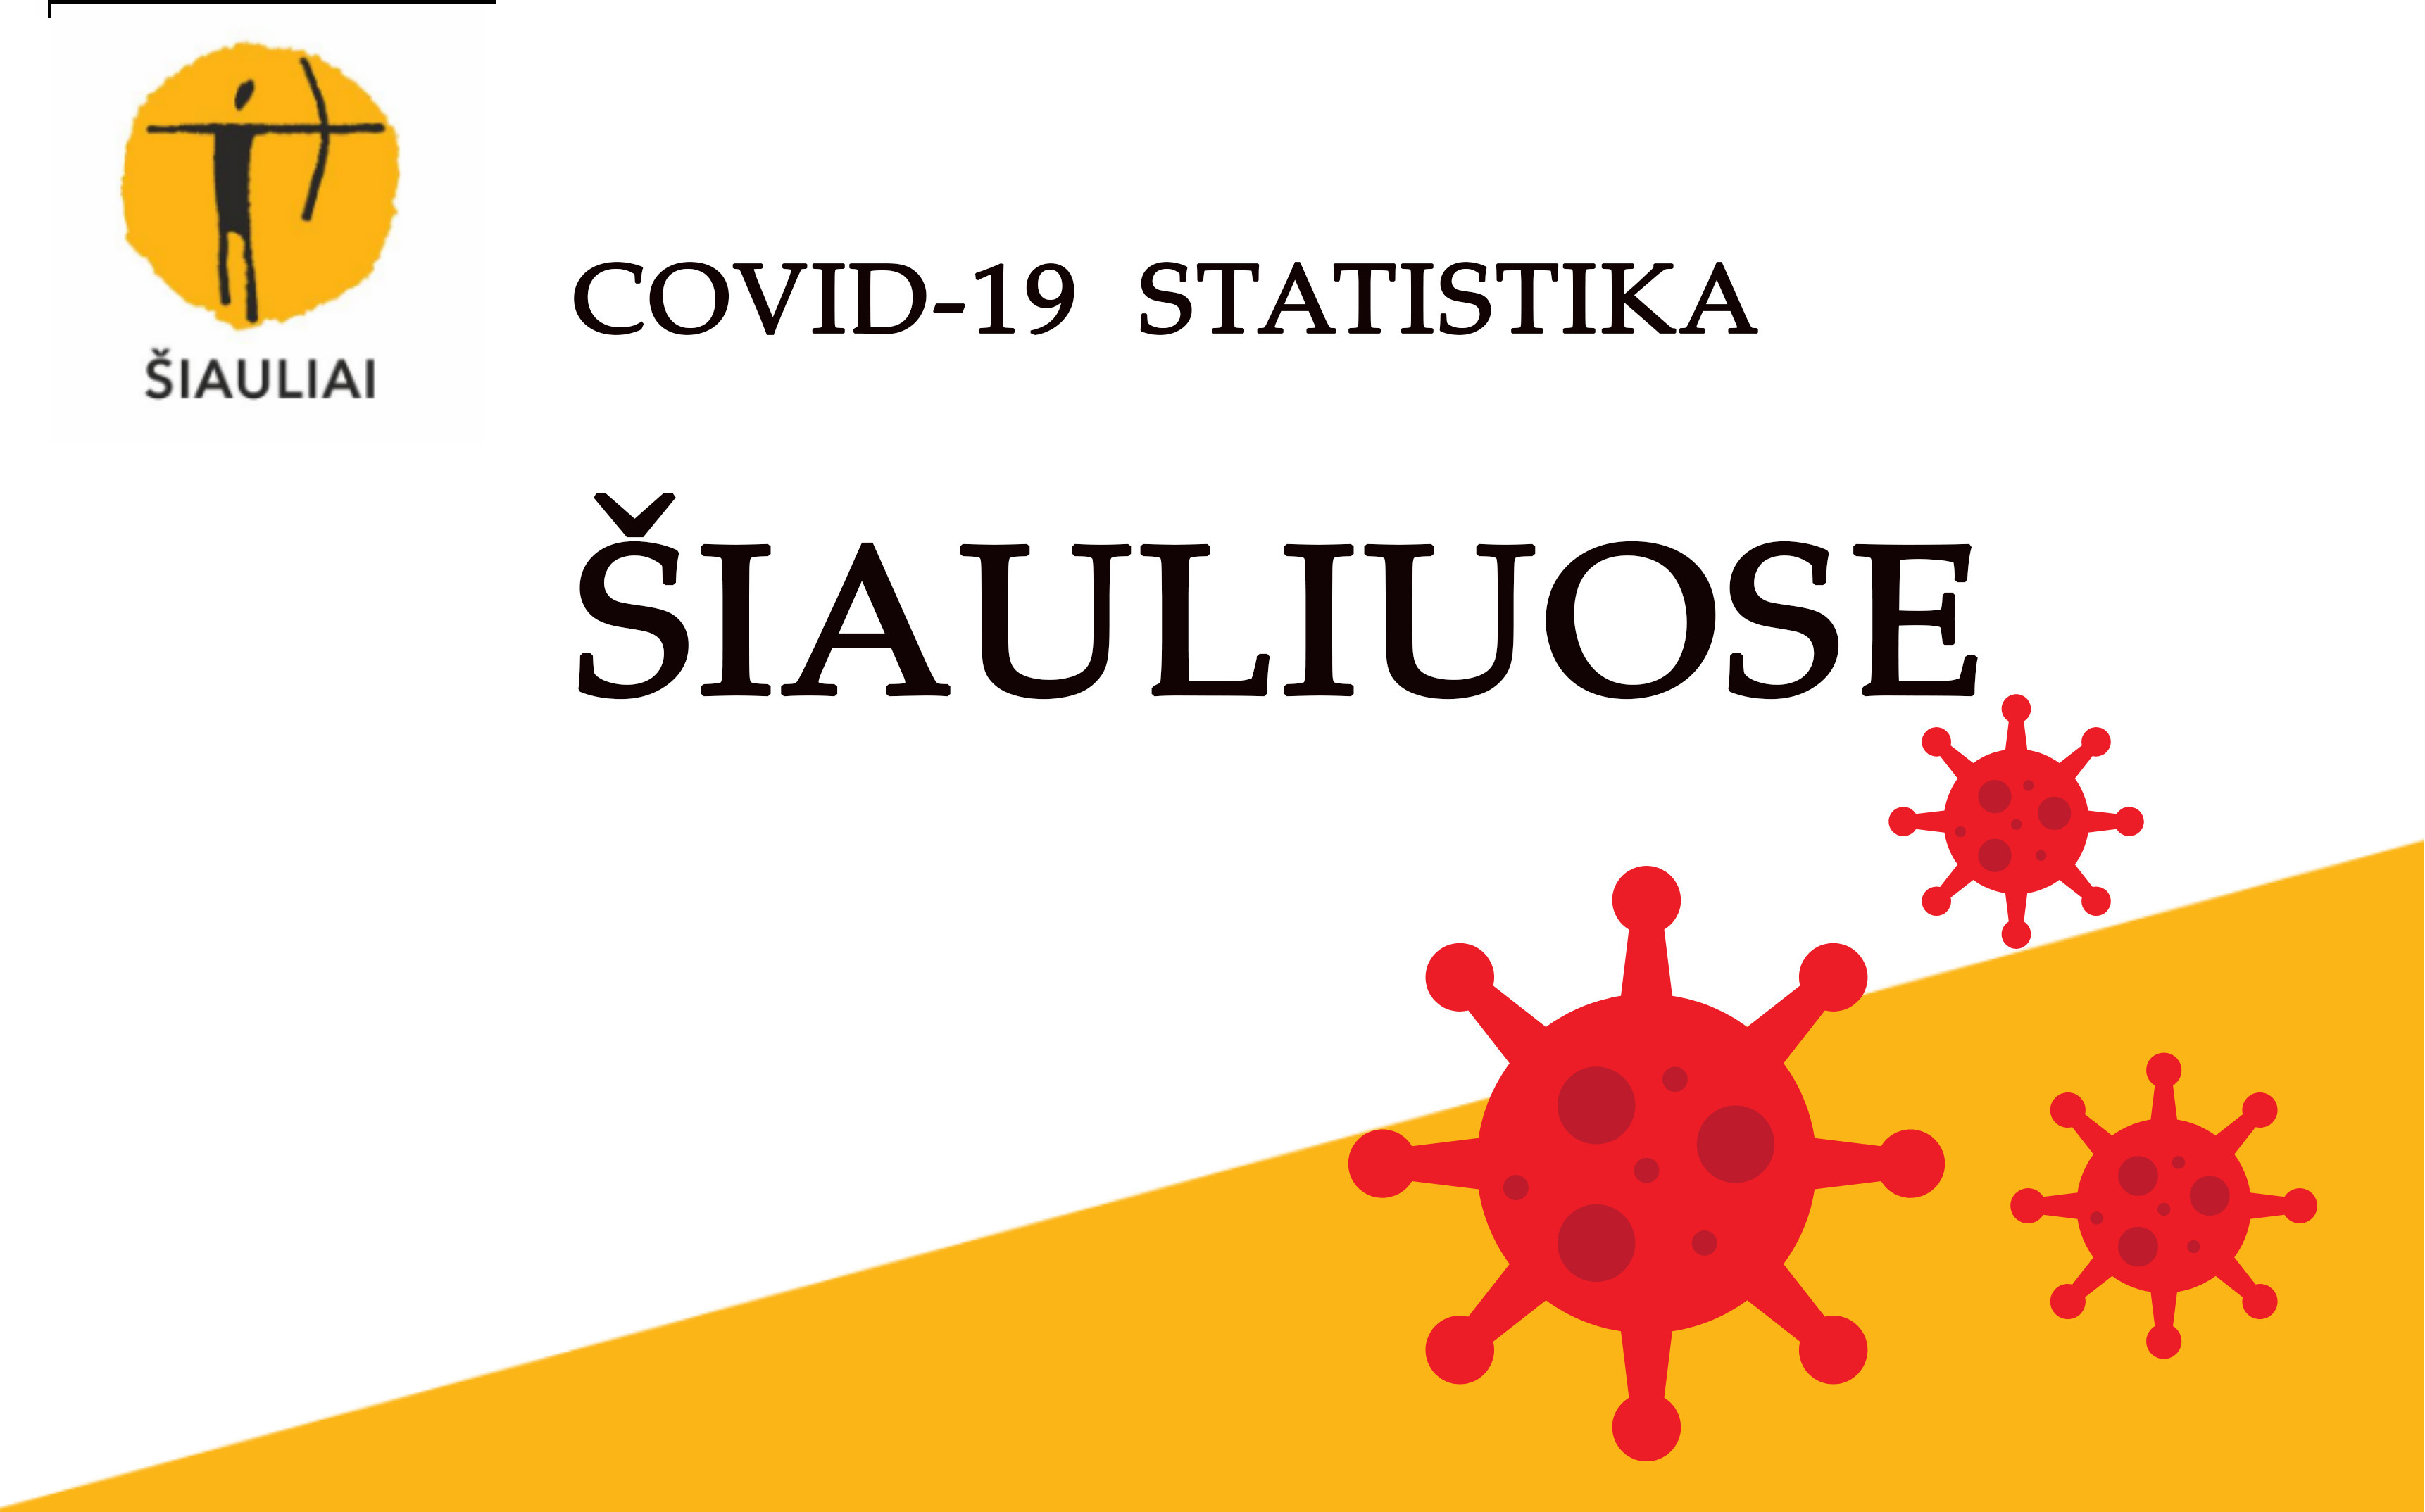 COVID statistika